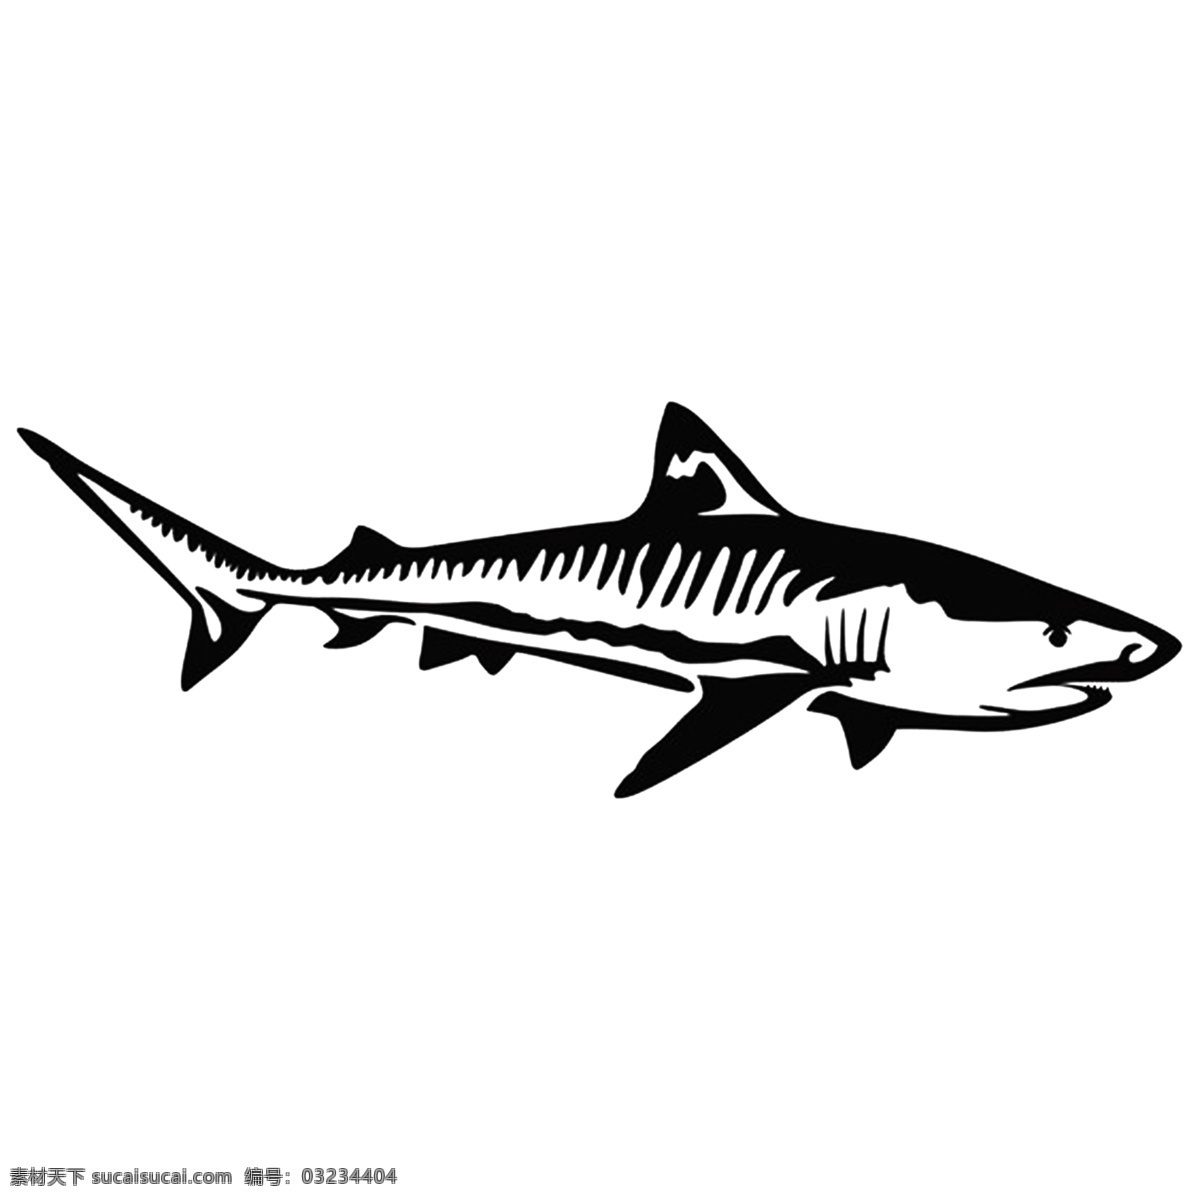 鲨鱼 印花 矢量 图形 动物 t 恤 卫 衣 鲨鱼印花 矢量图形 动物图案 t恤卫衣印花 白色